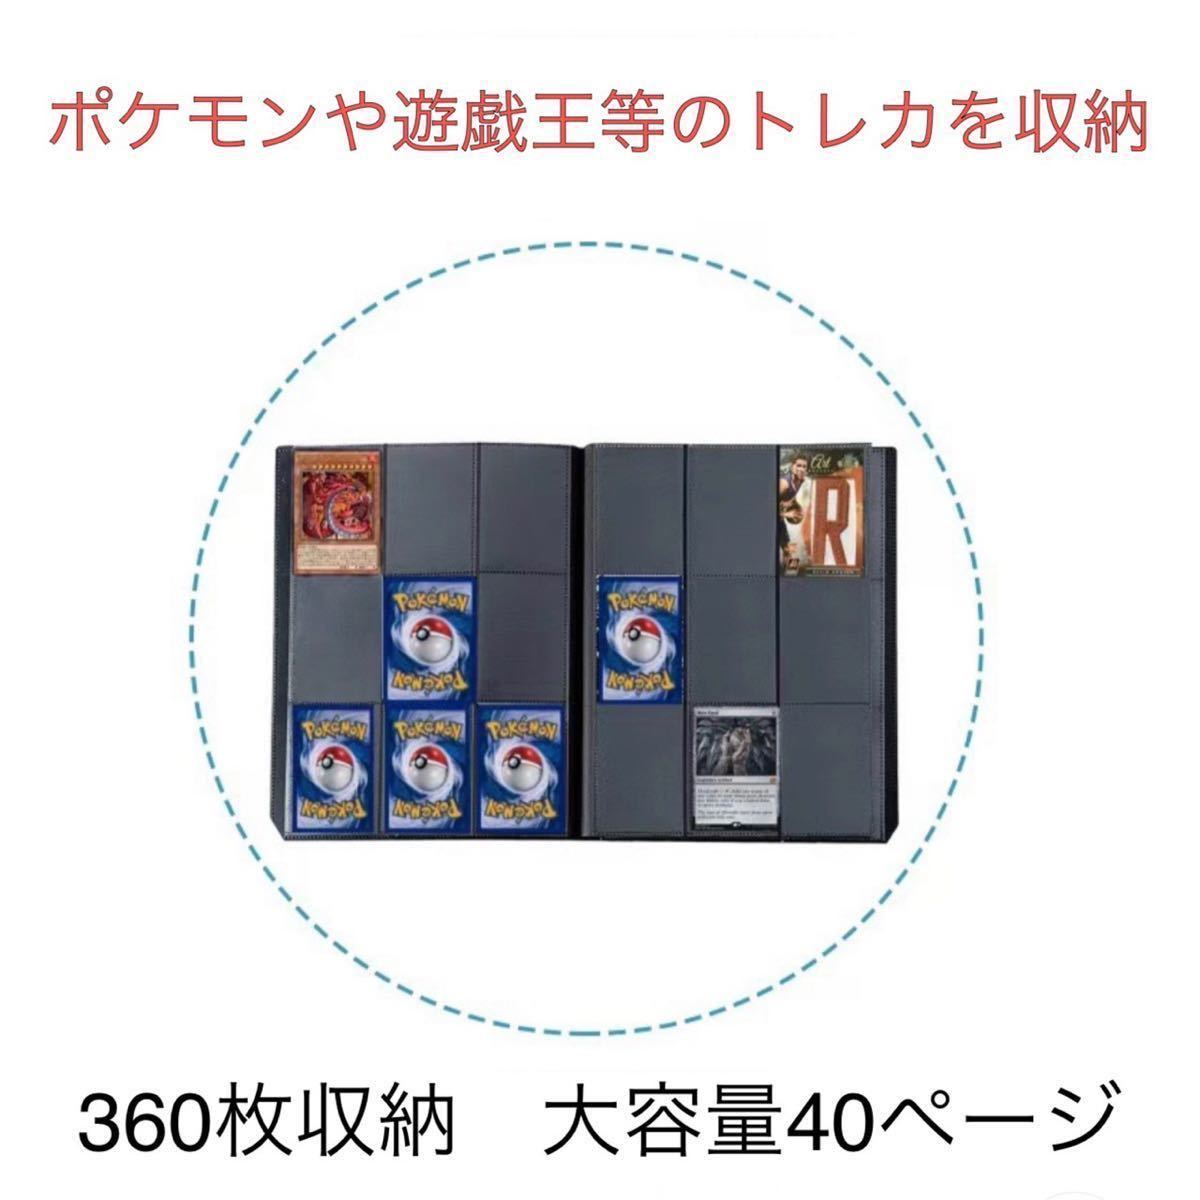 トレカファイル 2冊セット 360枚収納 匿名配送 大容量 カードケース 保管 保存 コレクション カード 黒 ブラック_画像6